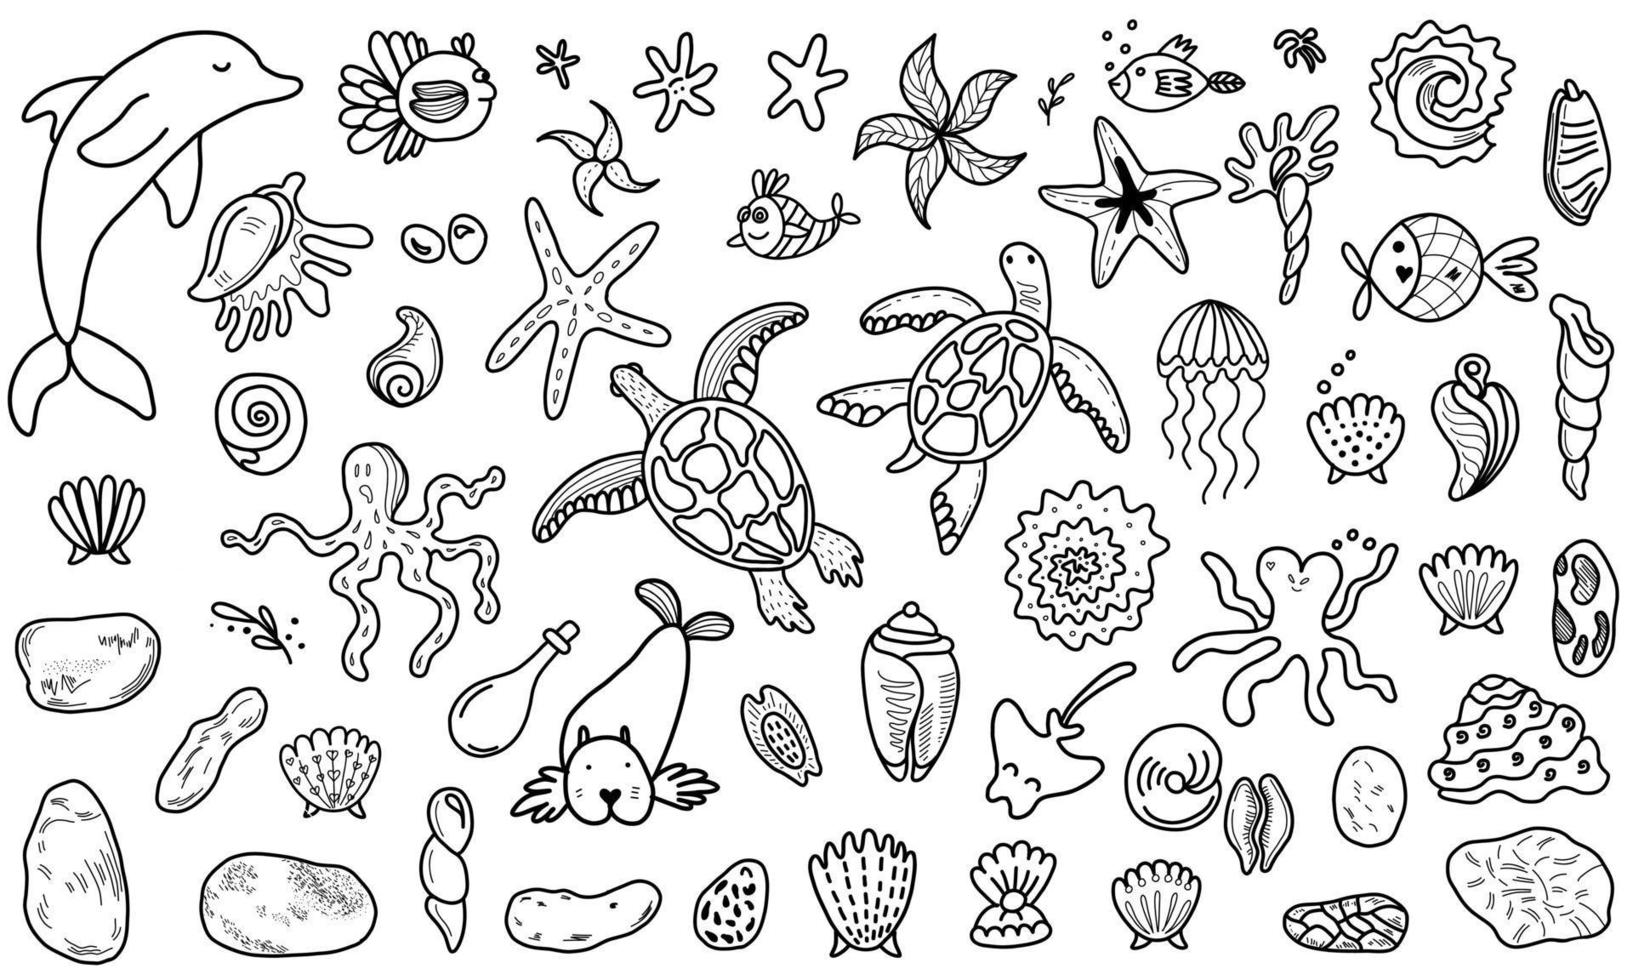 divers animaux marins et poissons. illustration vectorielle dans le style doodle vecteur